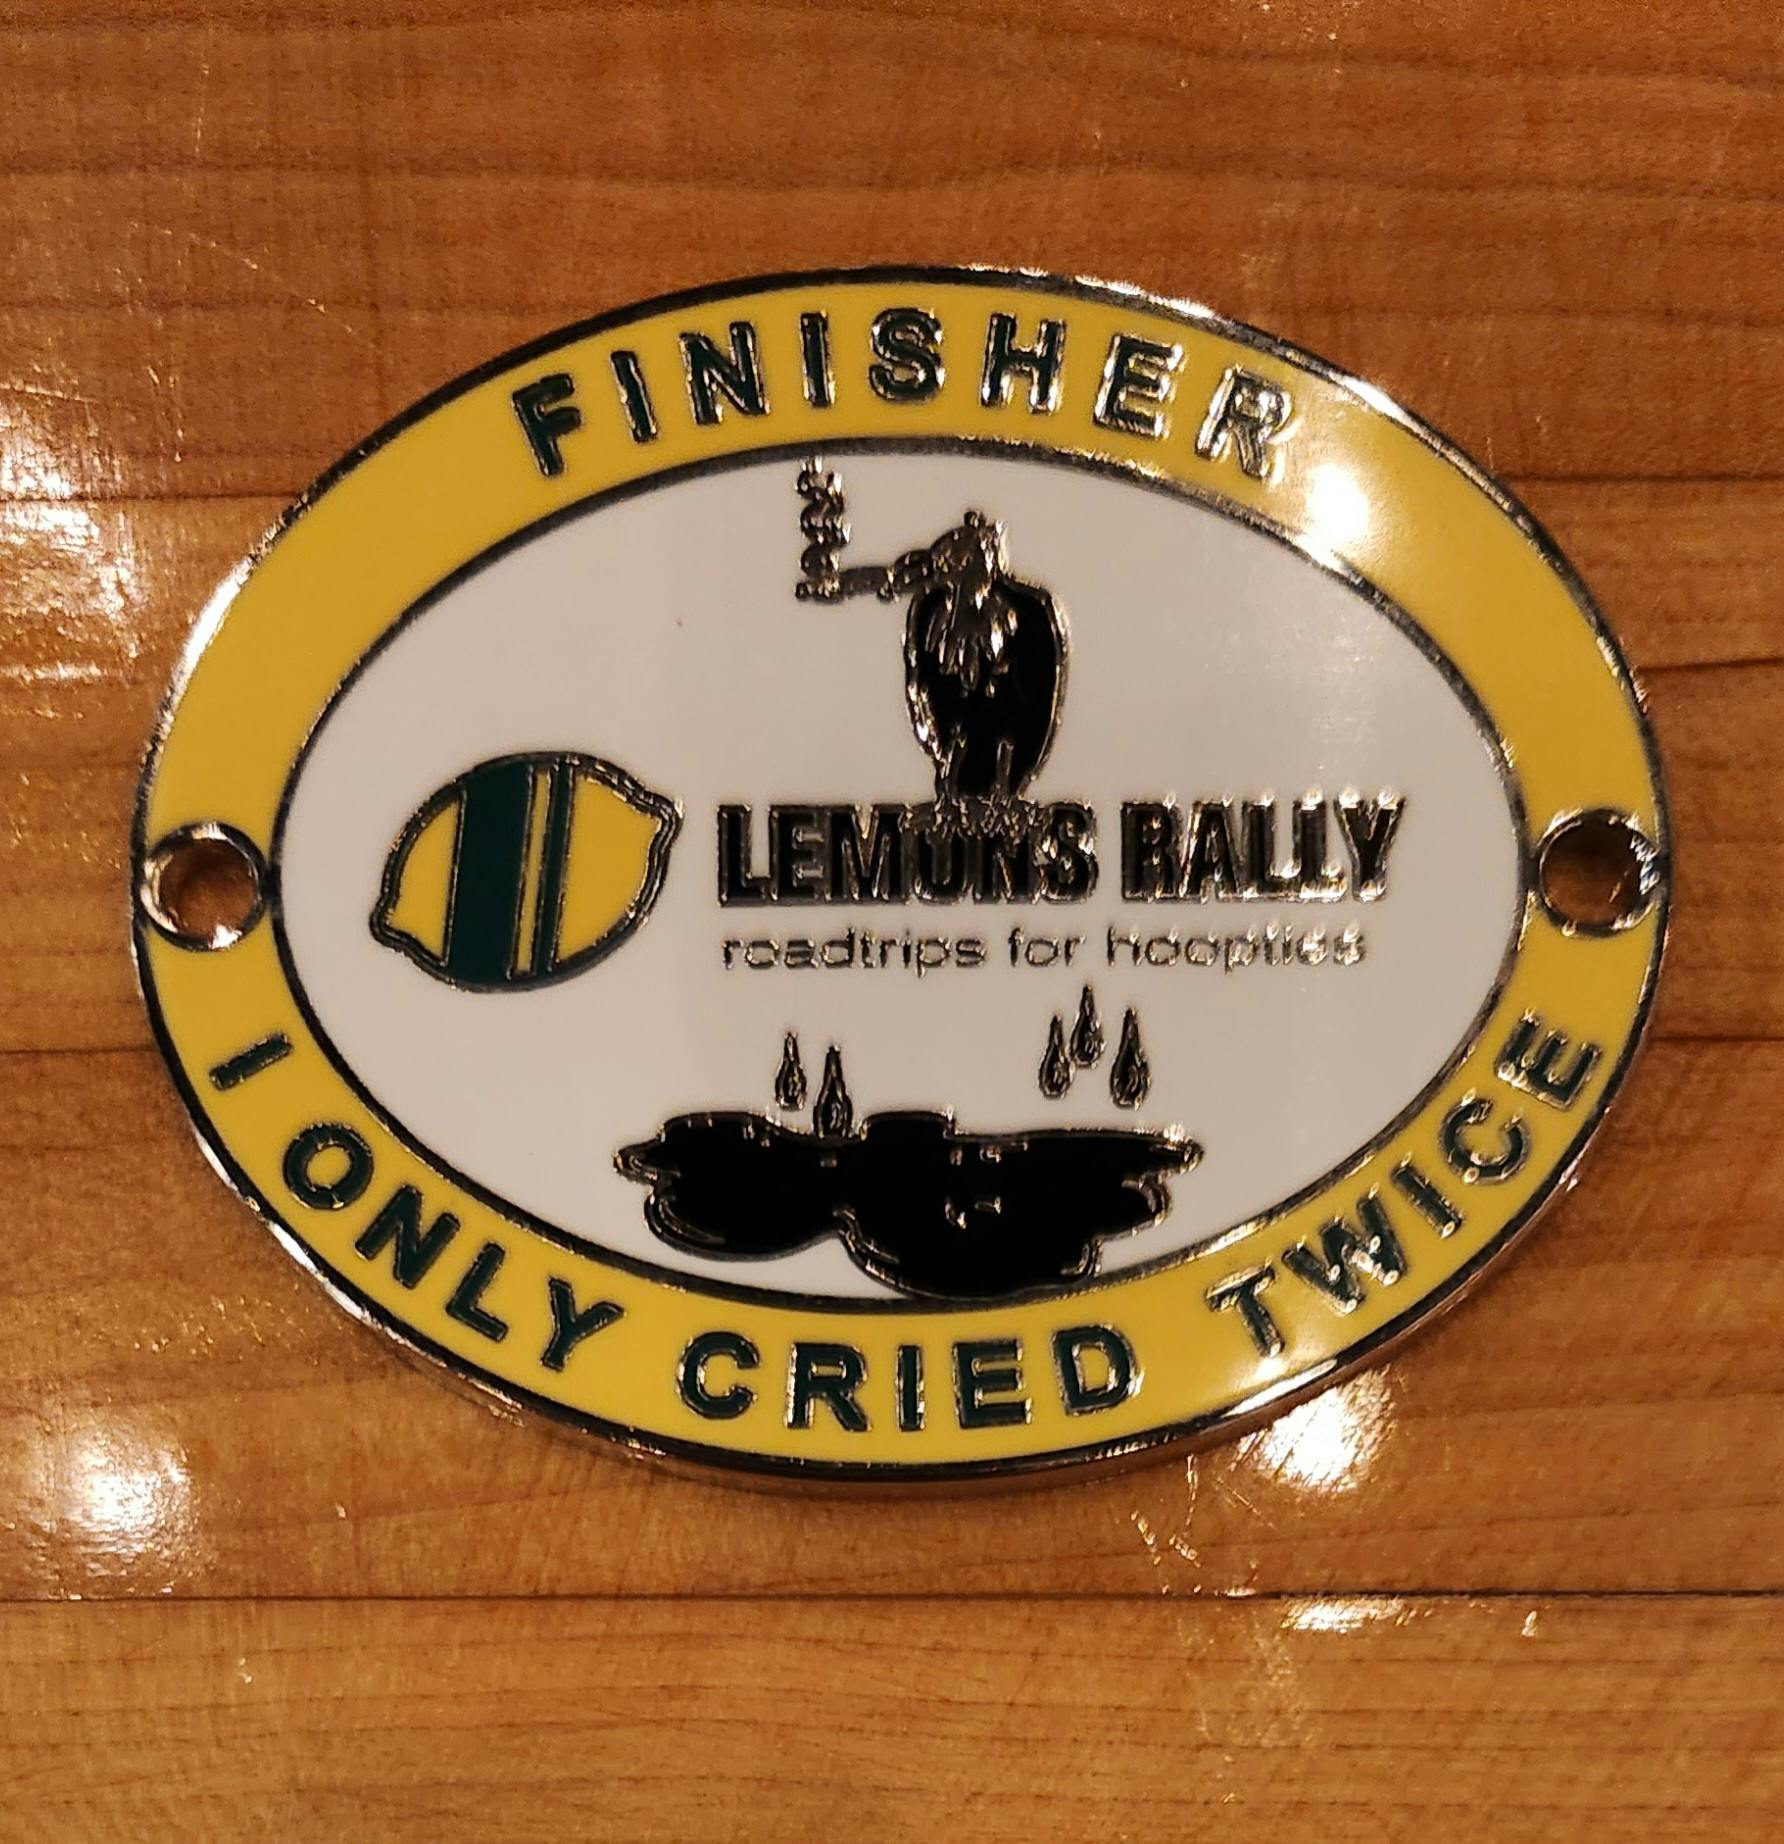 Lemons Rally series finisher medal